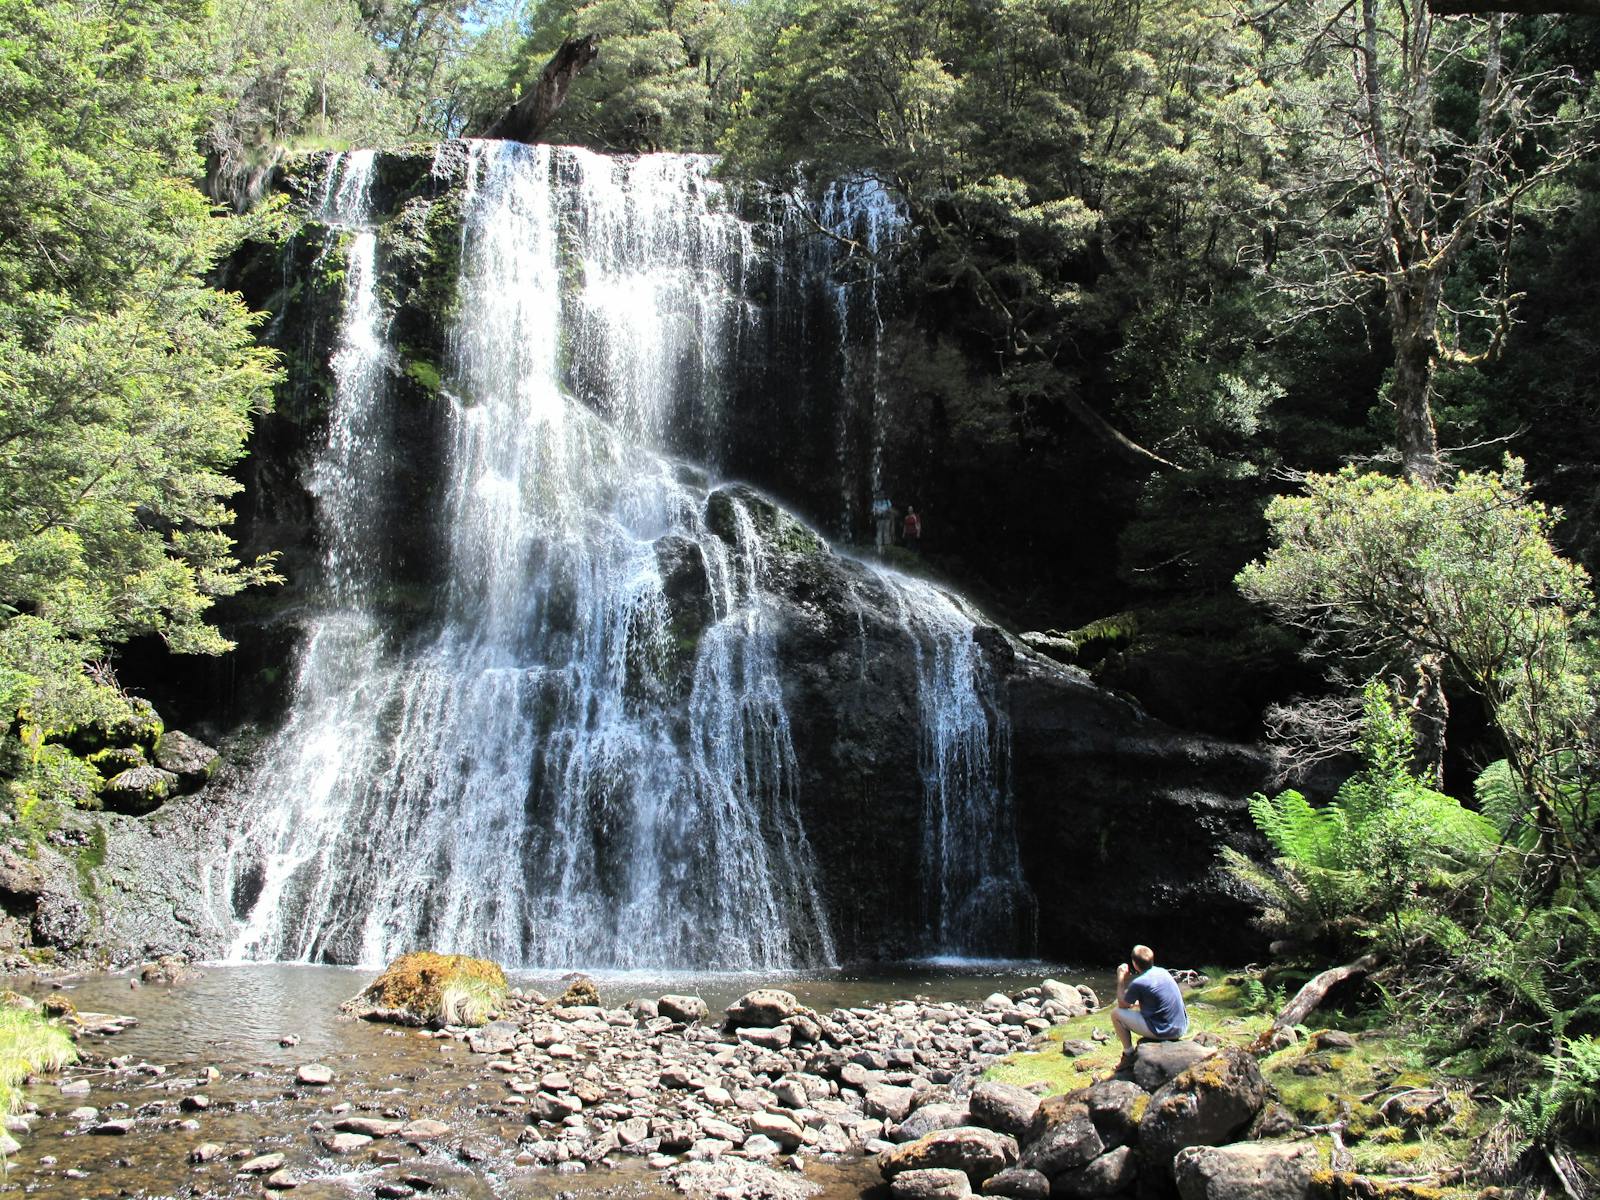 Walker at waterfall in Tasmania